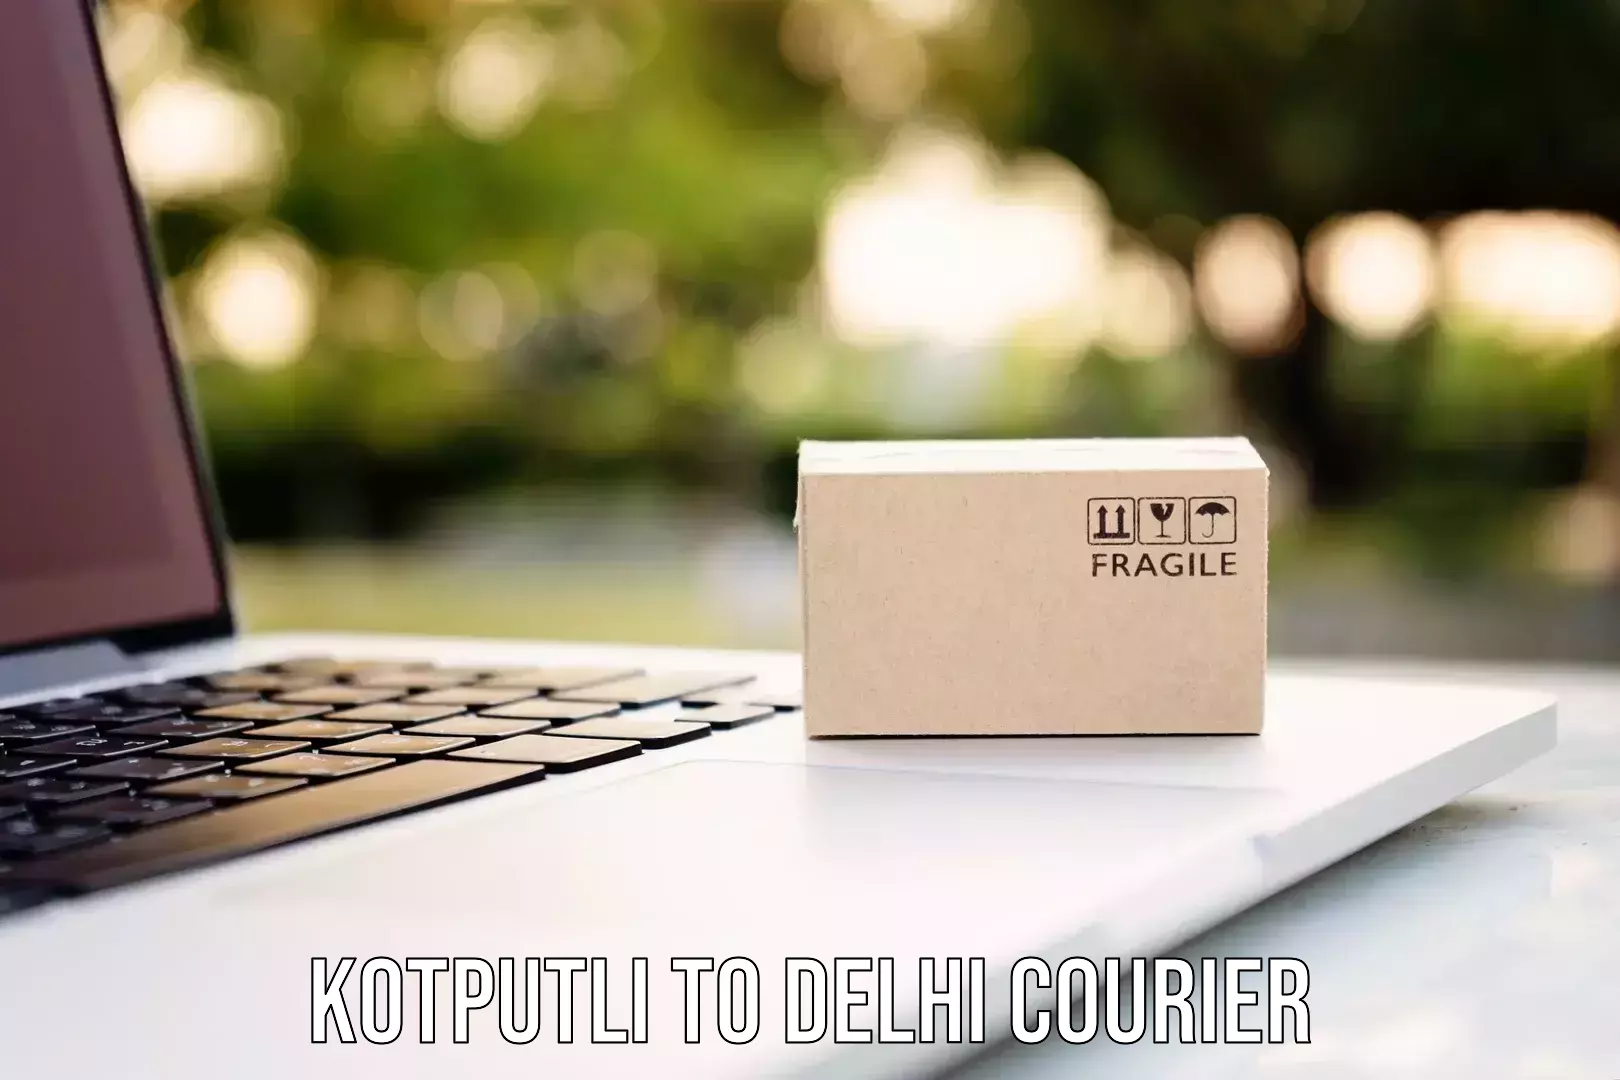 Cross-border shipping Kotputli to IIT Delhi